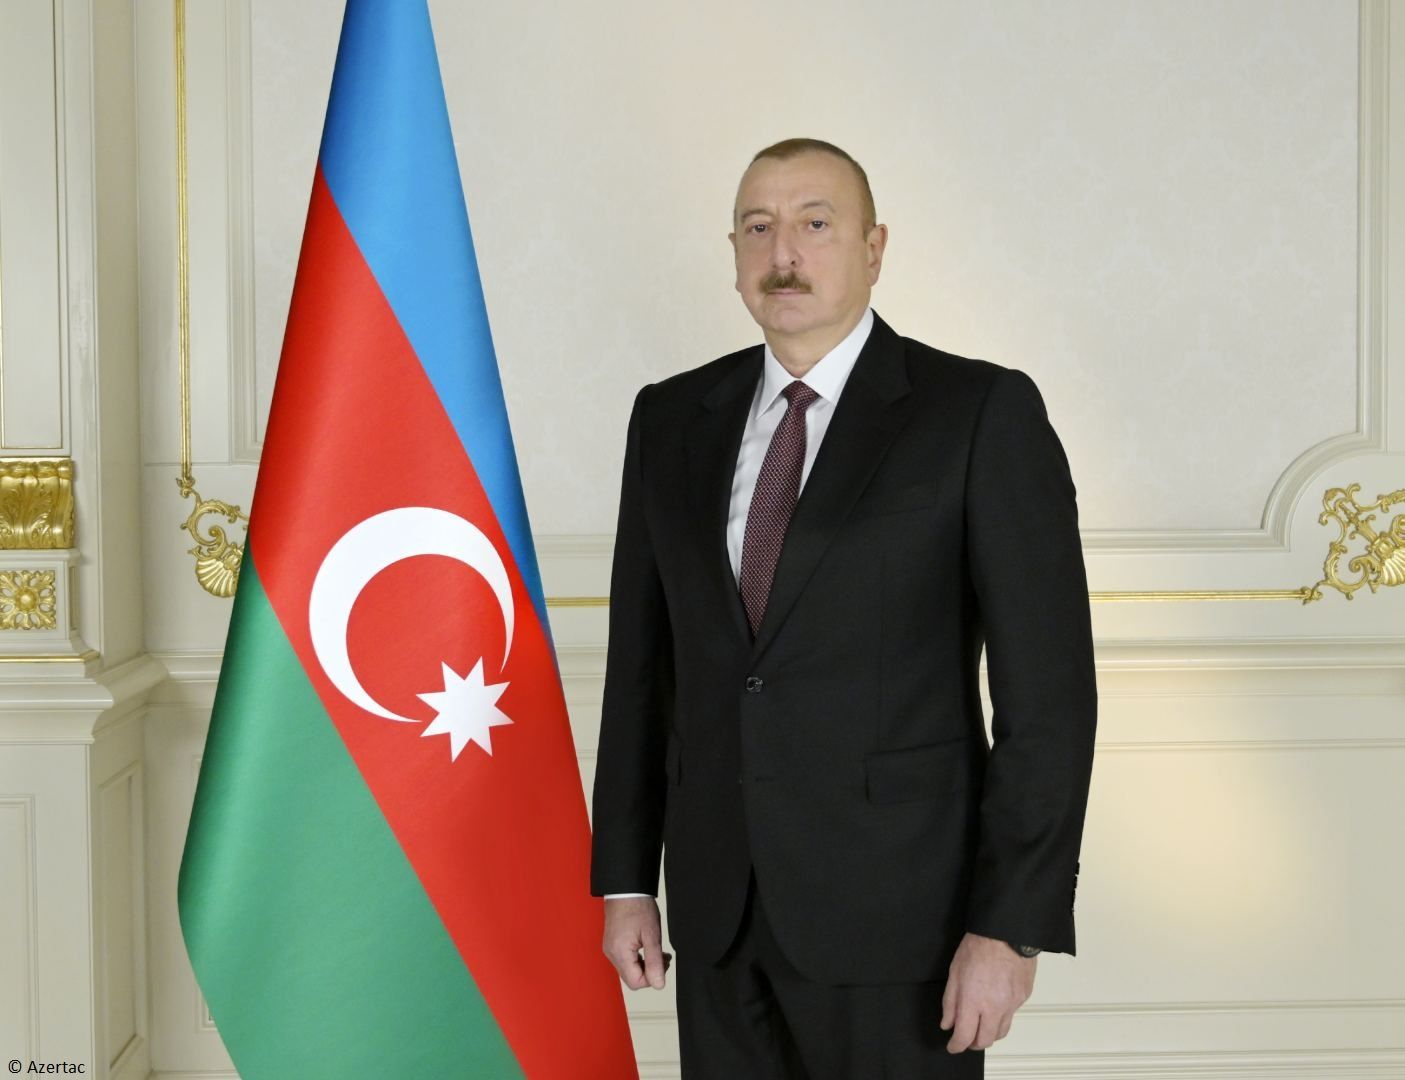 Le président Ilham Aliyev a partagé sur Facebook une publication liée à l'anniversaire du génocide de Khodjaly